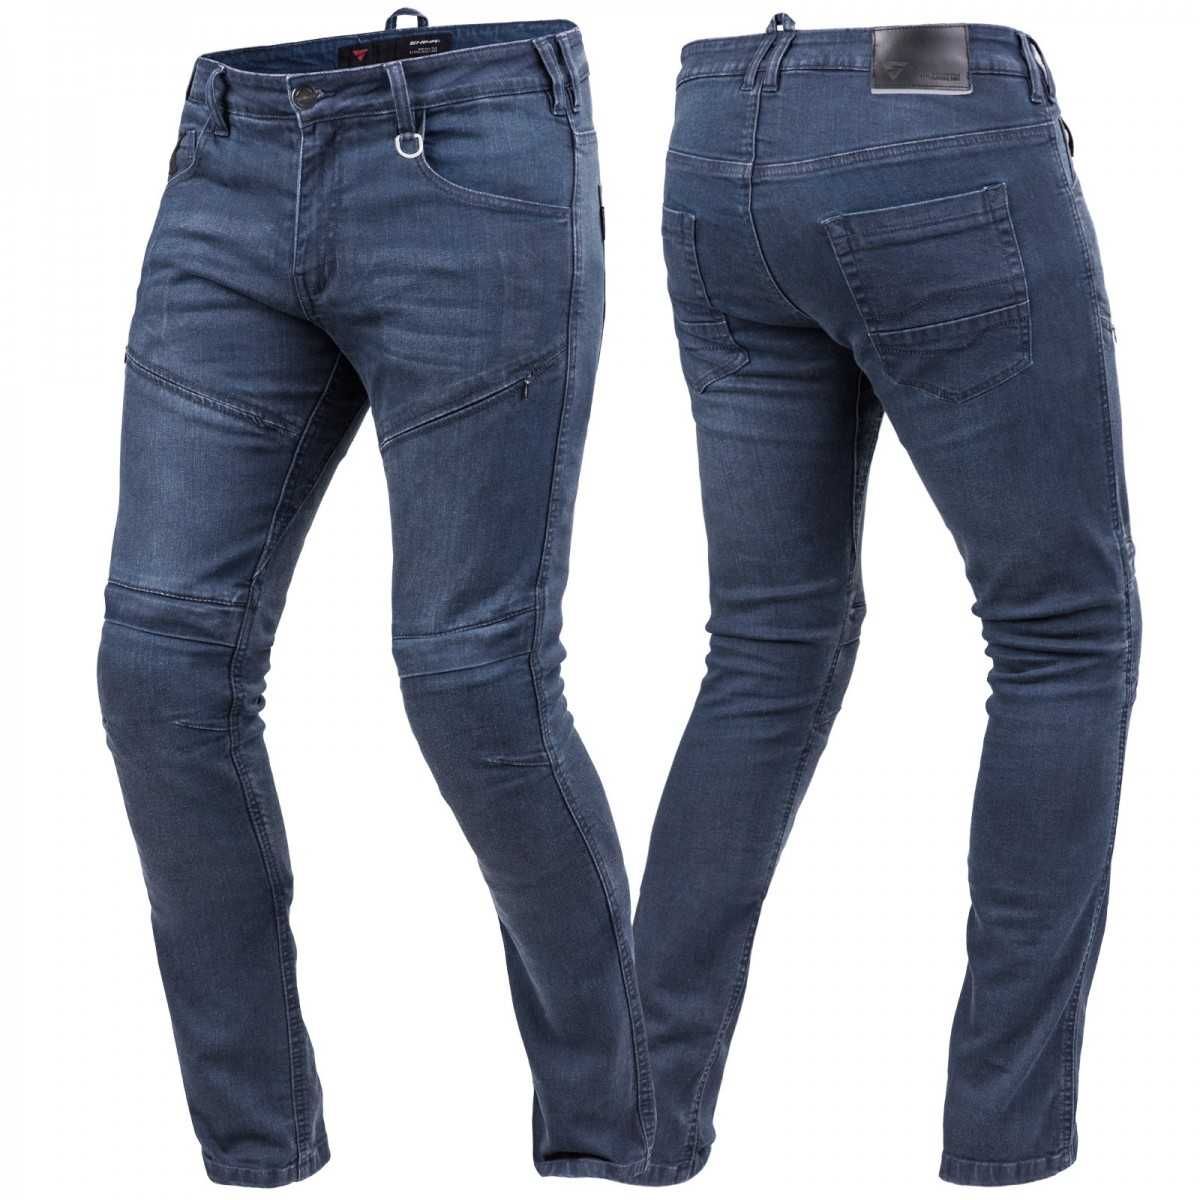 Spodnie męskie jeansy motocyklowe GRAVEL 3.0 SHIMA